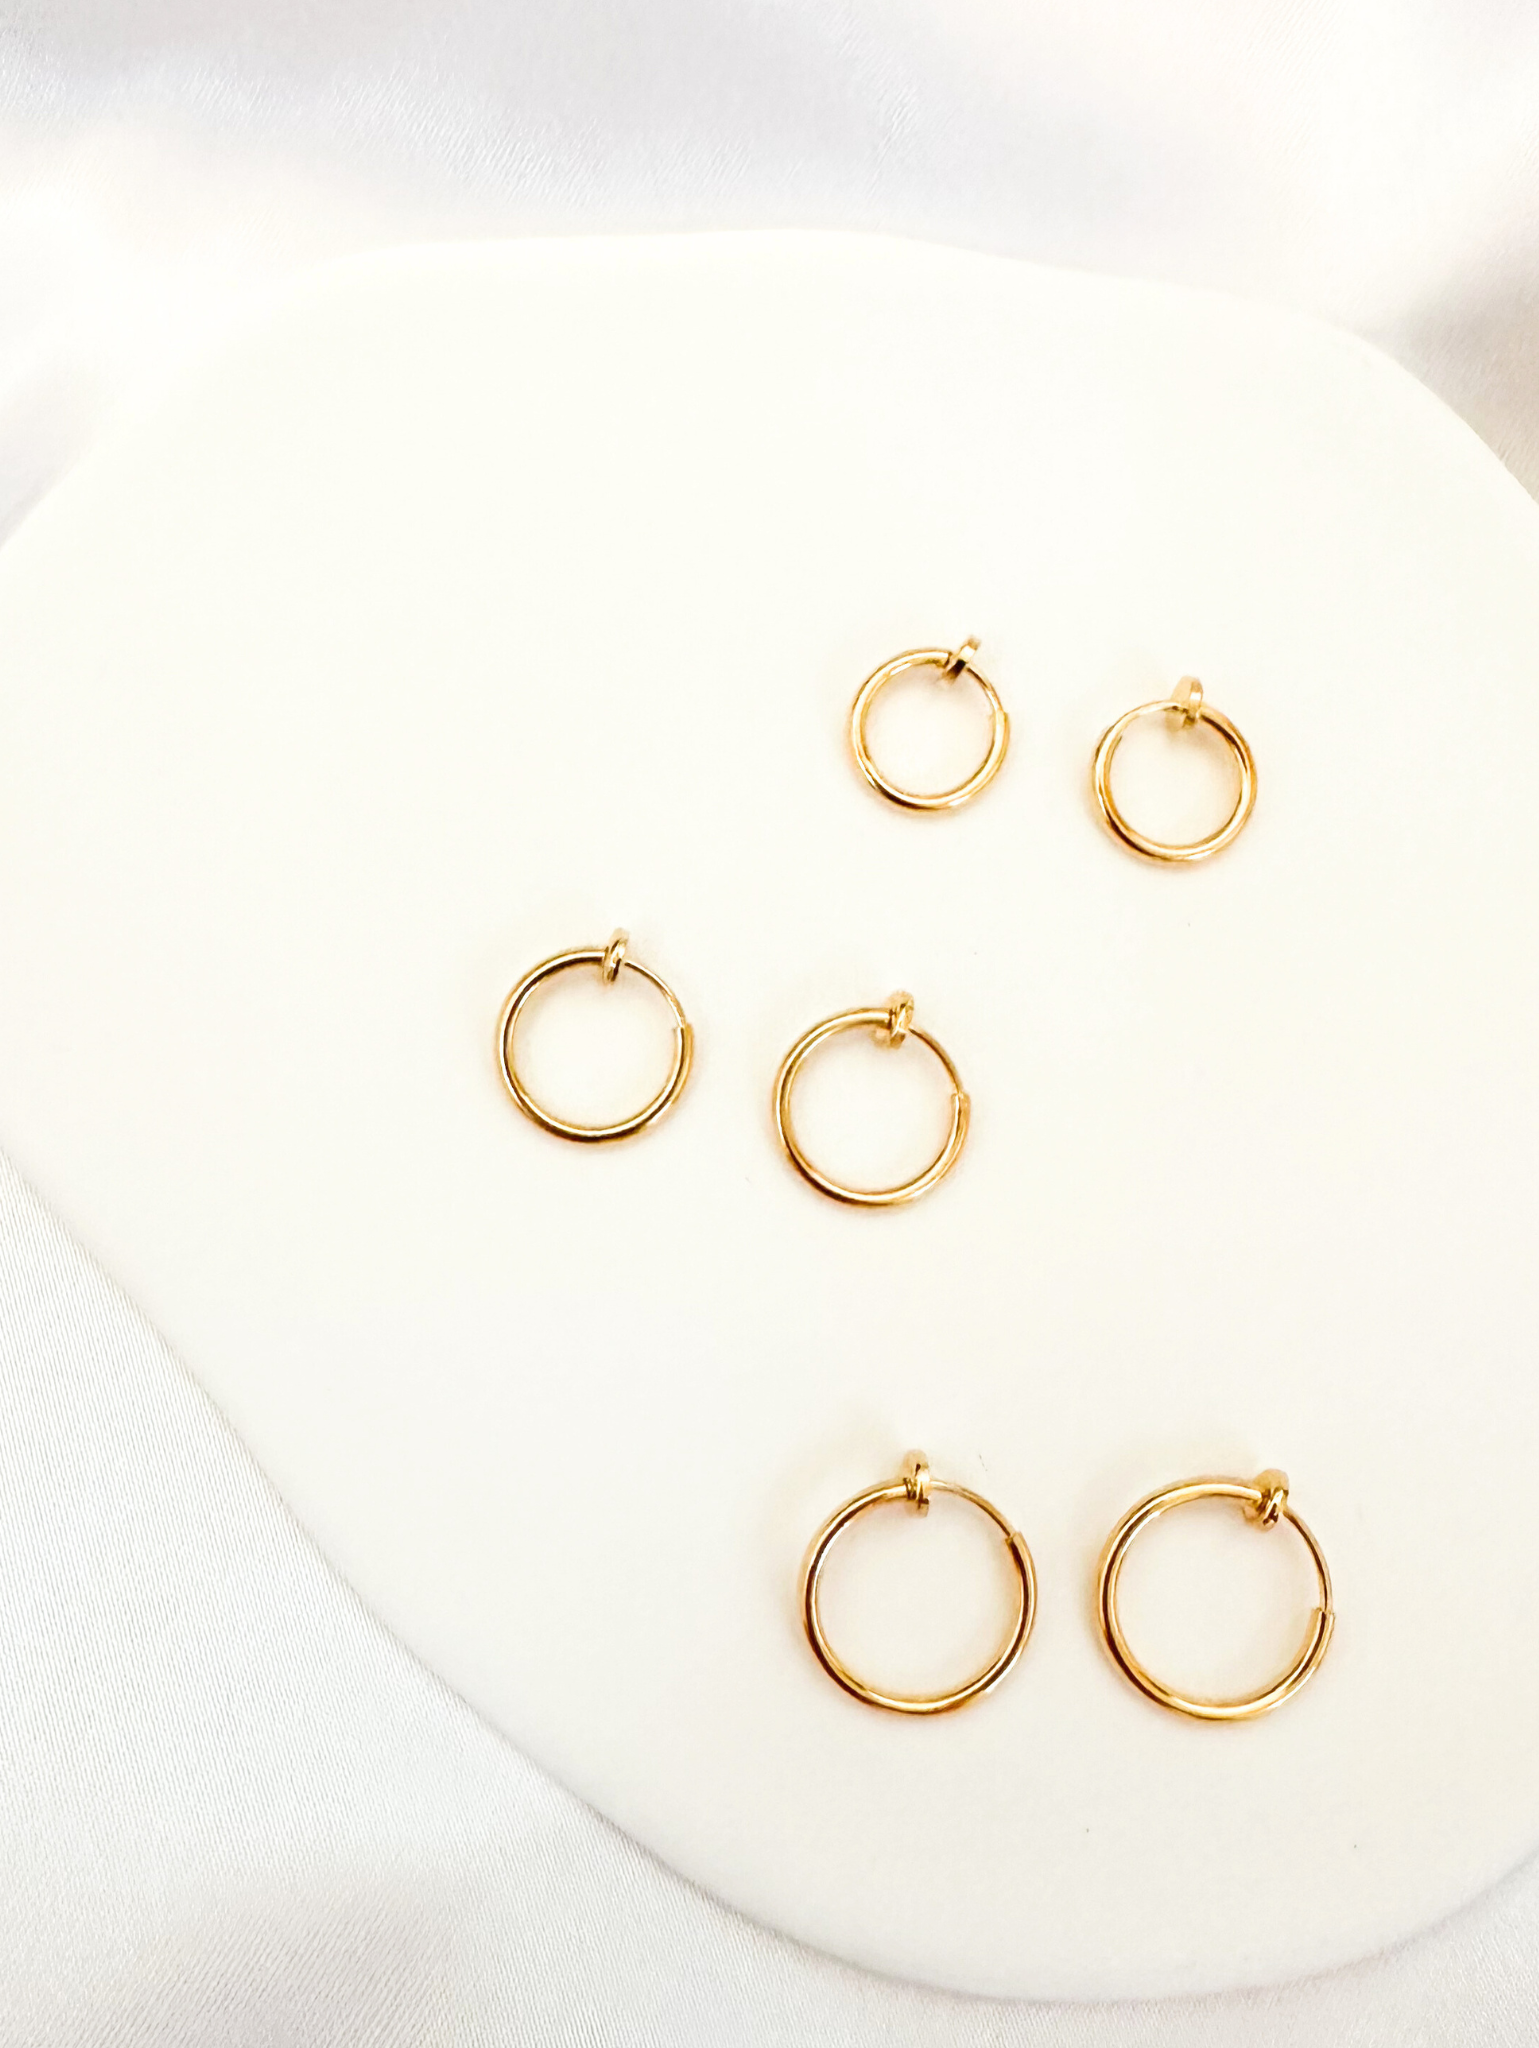 11mm, 13mm, 15mm gold sliding spring clipon hoop earrings